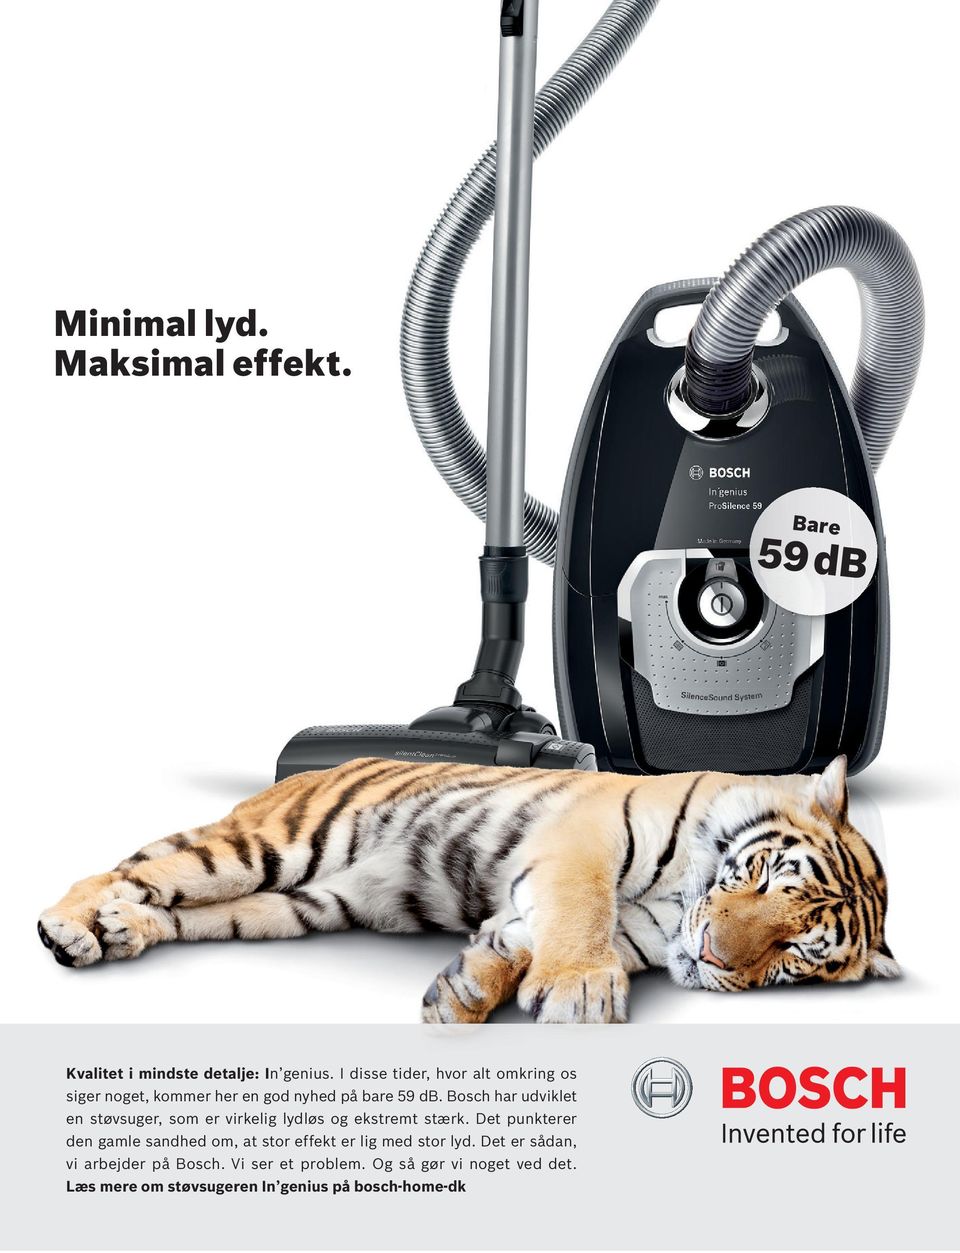 Bosch har udviklet en støvsuger, som er virkelig lydløs og ekstremt stærk.